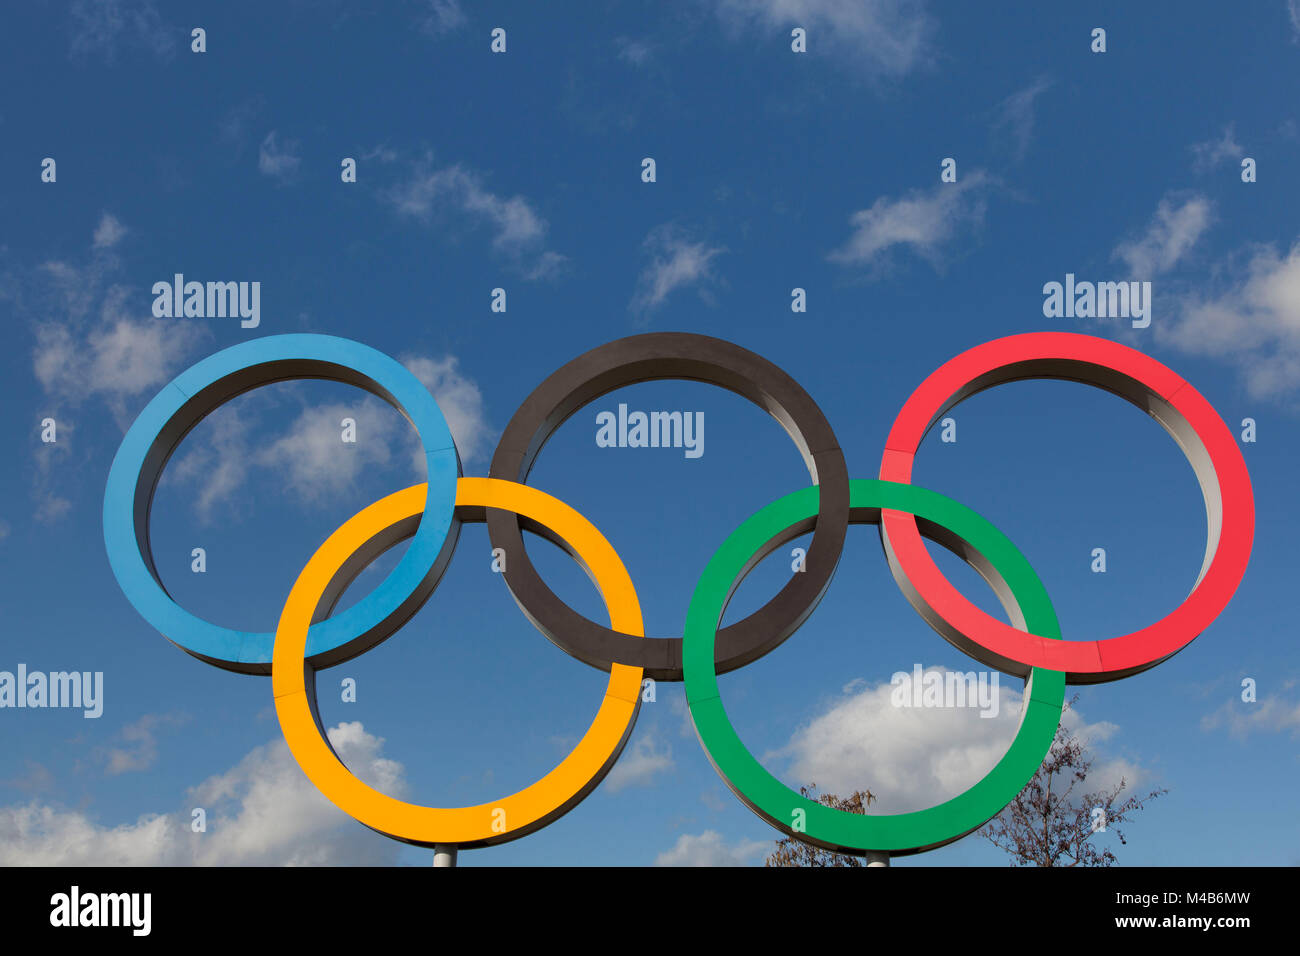 LONDON, UK, 15. Februar 2018: Das olympische Symbol, das aus fünf miteinander verbundenen farbige Ringe, unter einem blauen Himmel Stockfoto